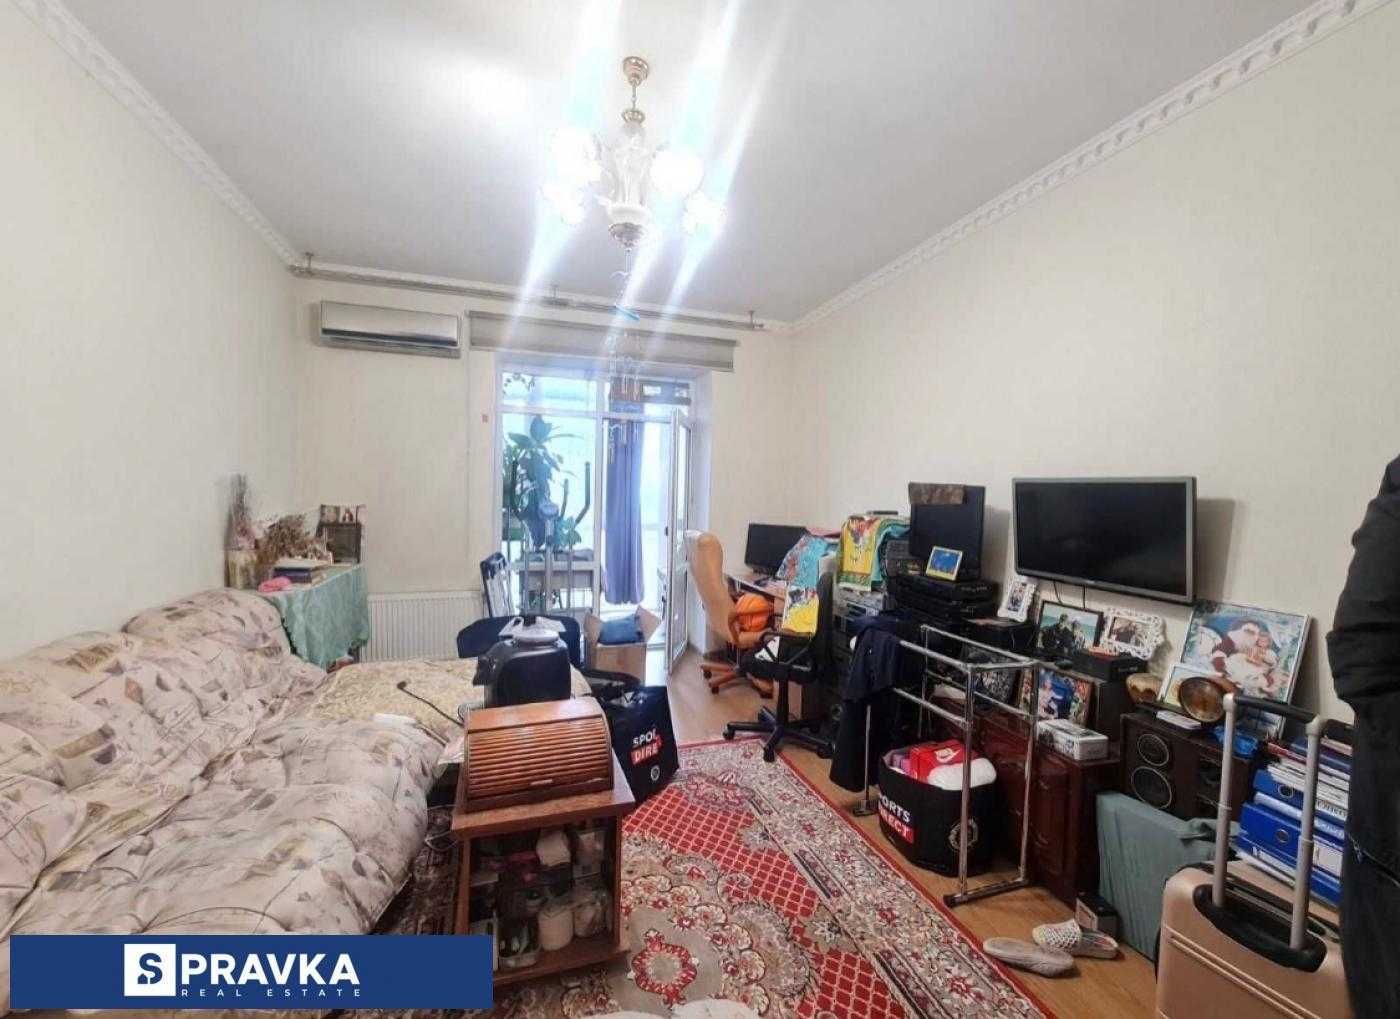 Квартира с большим панарамной лоджией в ЖК "7 Самураев"